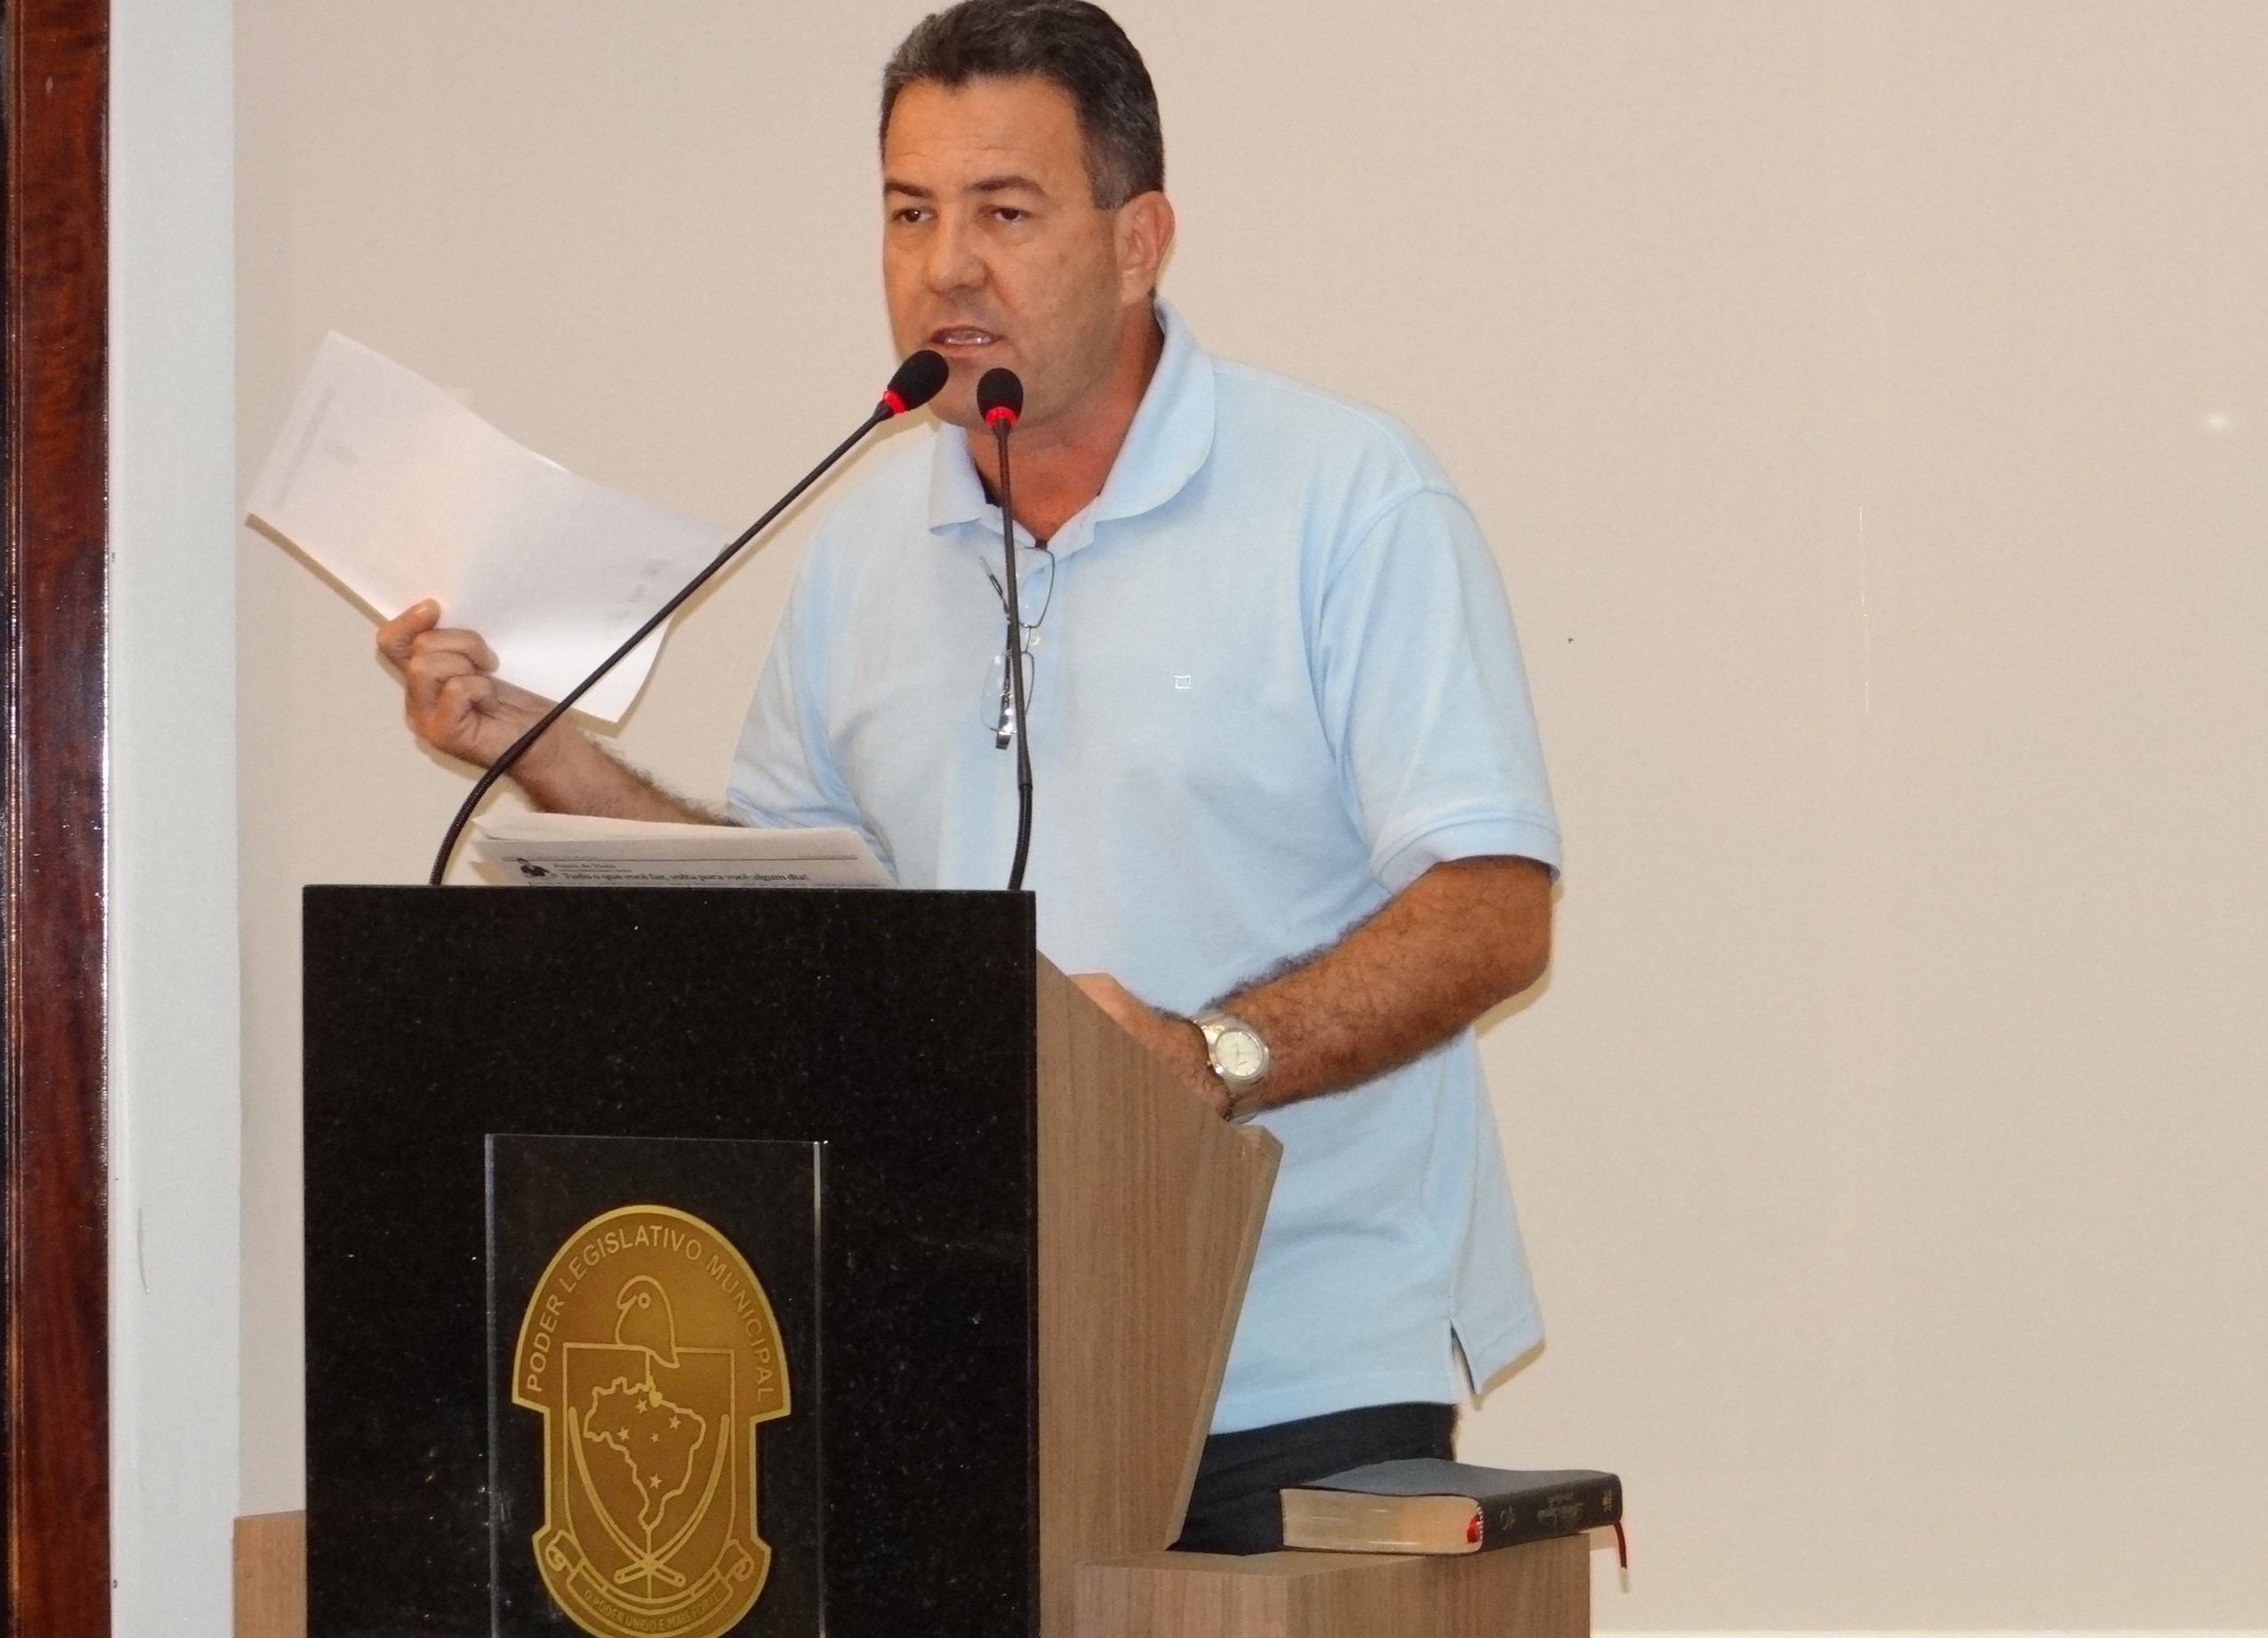 Secretaria de Esportes de Jaraguá busca recursos para reforma da Arena e do  Arthur Müller - Diário da Jaraguá